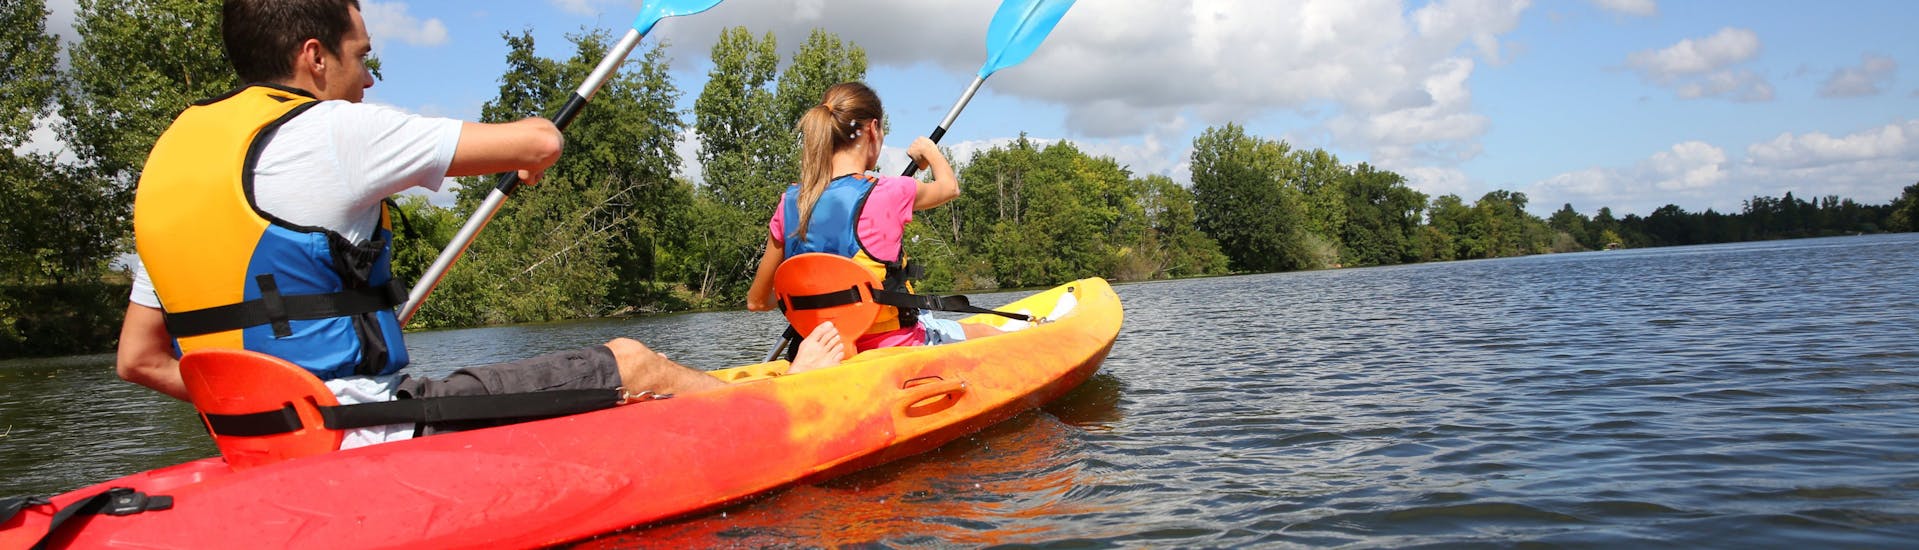 Leichte Kayak & Kanu-Tour in Chalonnes-sur-Loire - Loire River.